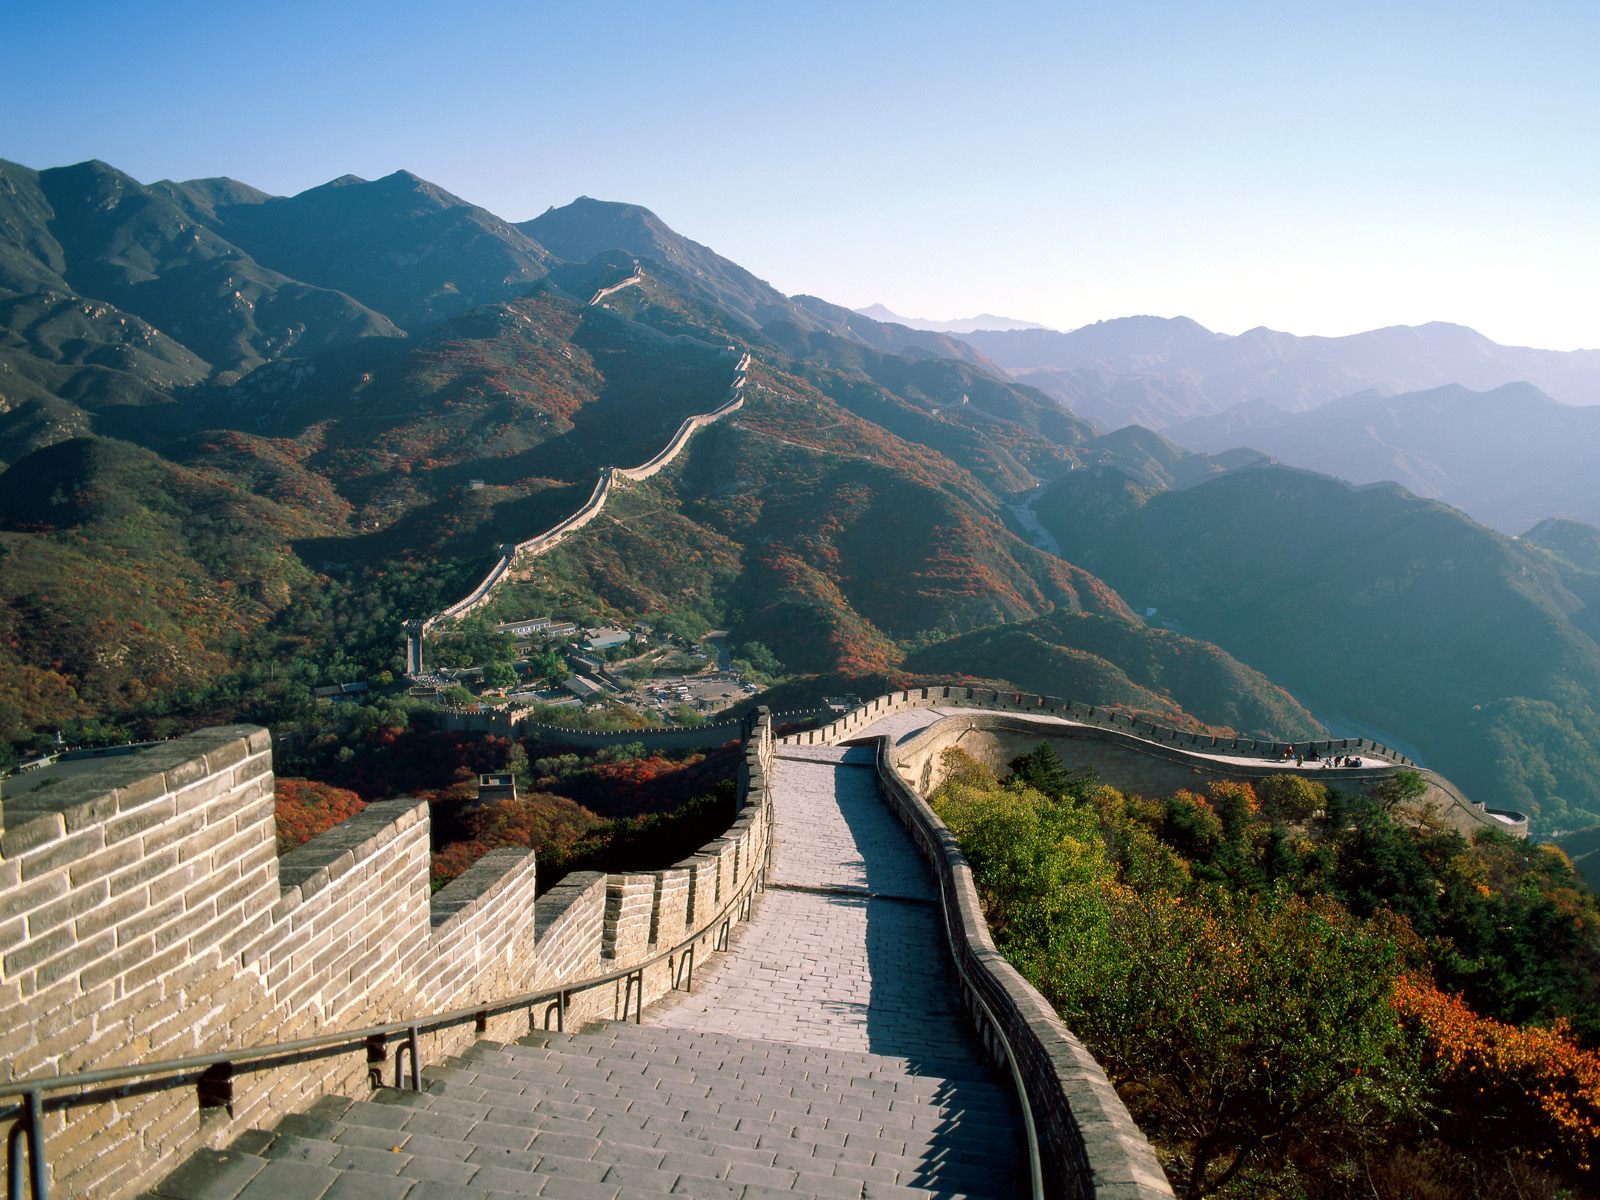 http://4.bp.blogspot.com/_2UbsSBz9ckE/Svnk-OaYkUI/AAAAAAAAAaY/5ifsK-qZdys/s1600/The+Great+Wall+of+China.jpg